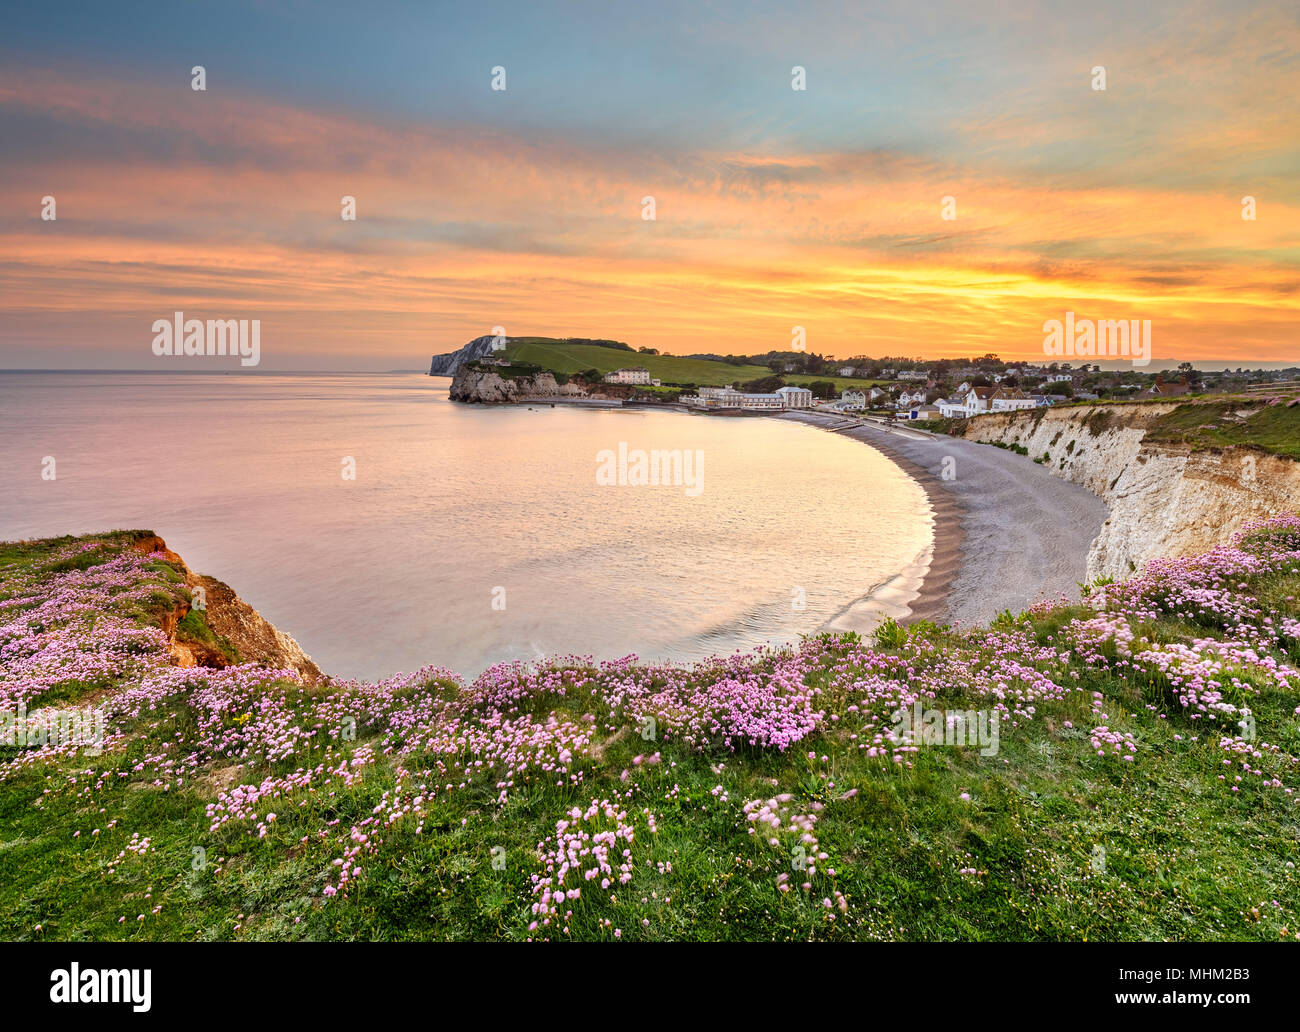 Panorama sul mare, rosa, rosa parsimonia presso la costa della Baia di acqua dolce Foto Stock